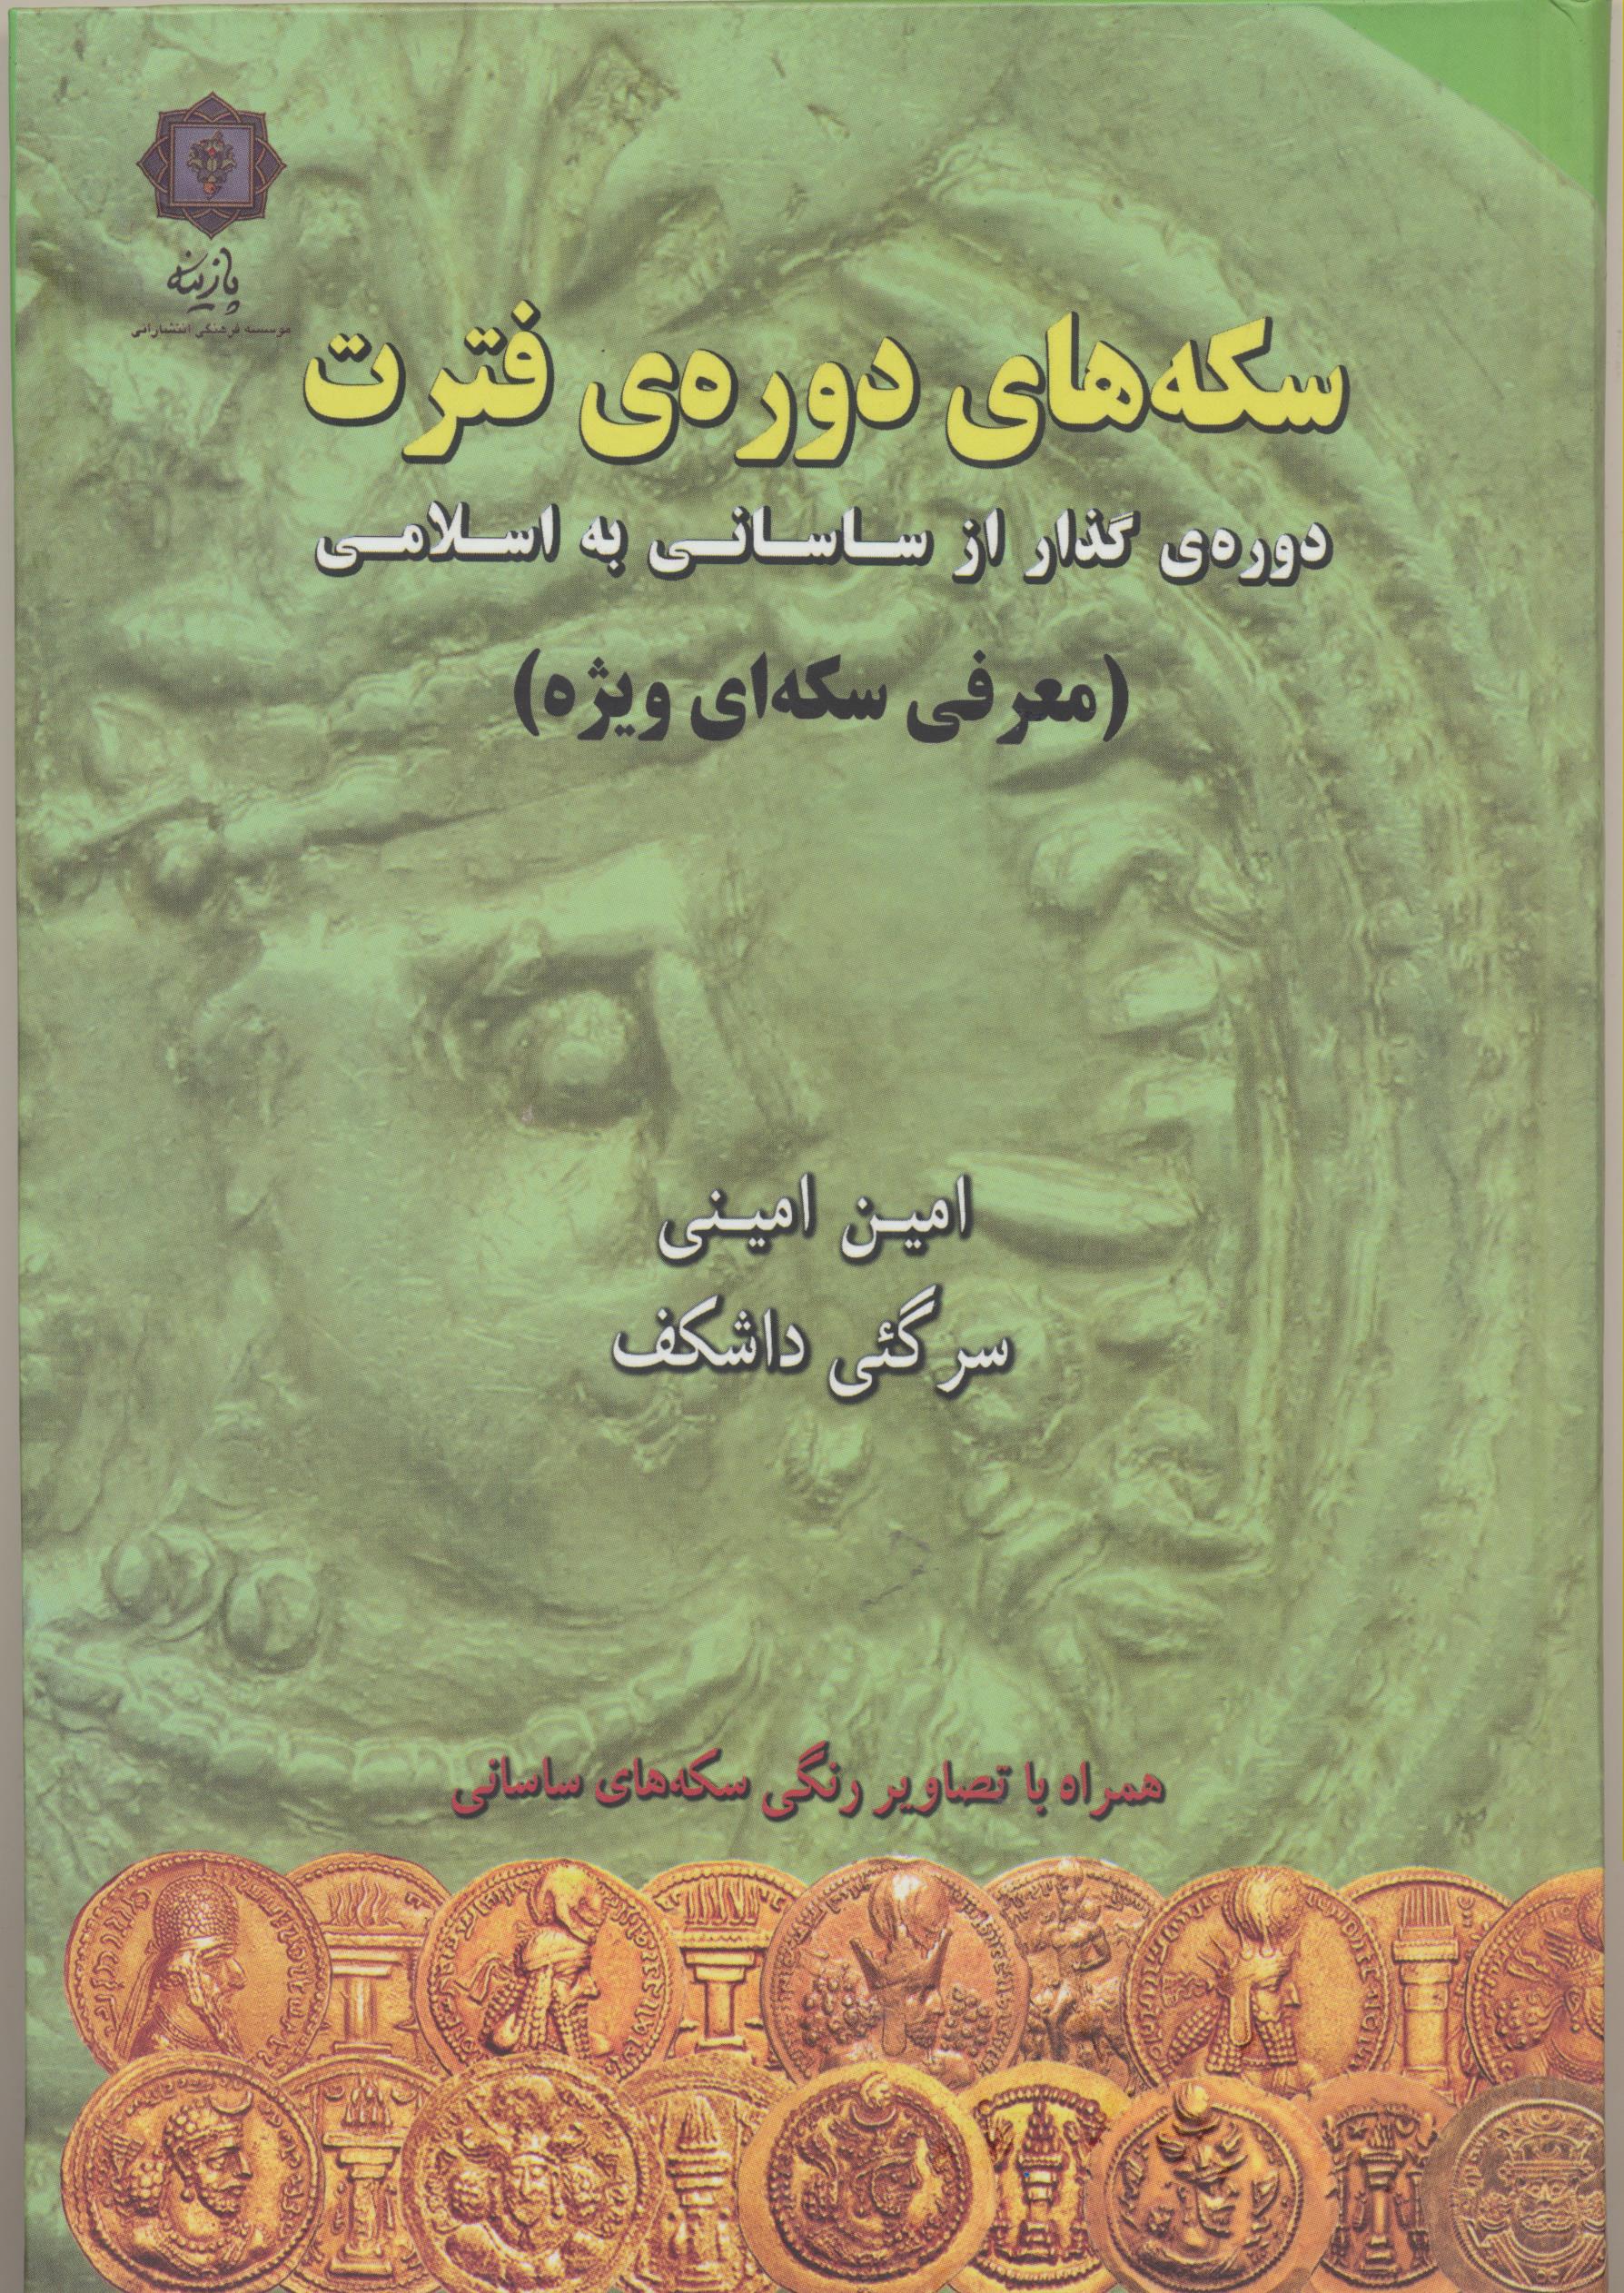 سکه های دوره فترت ، دوره گذار از ساسانی به اسلامی